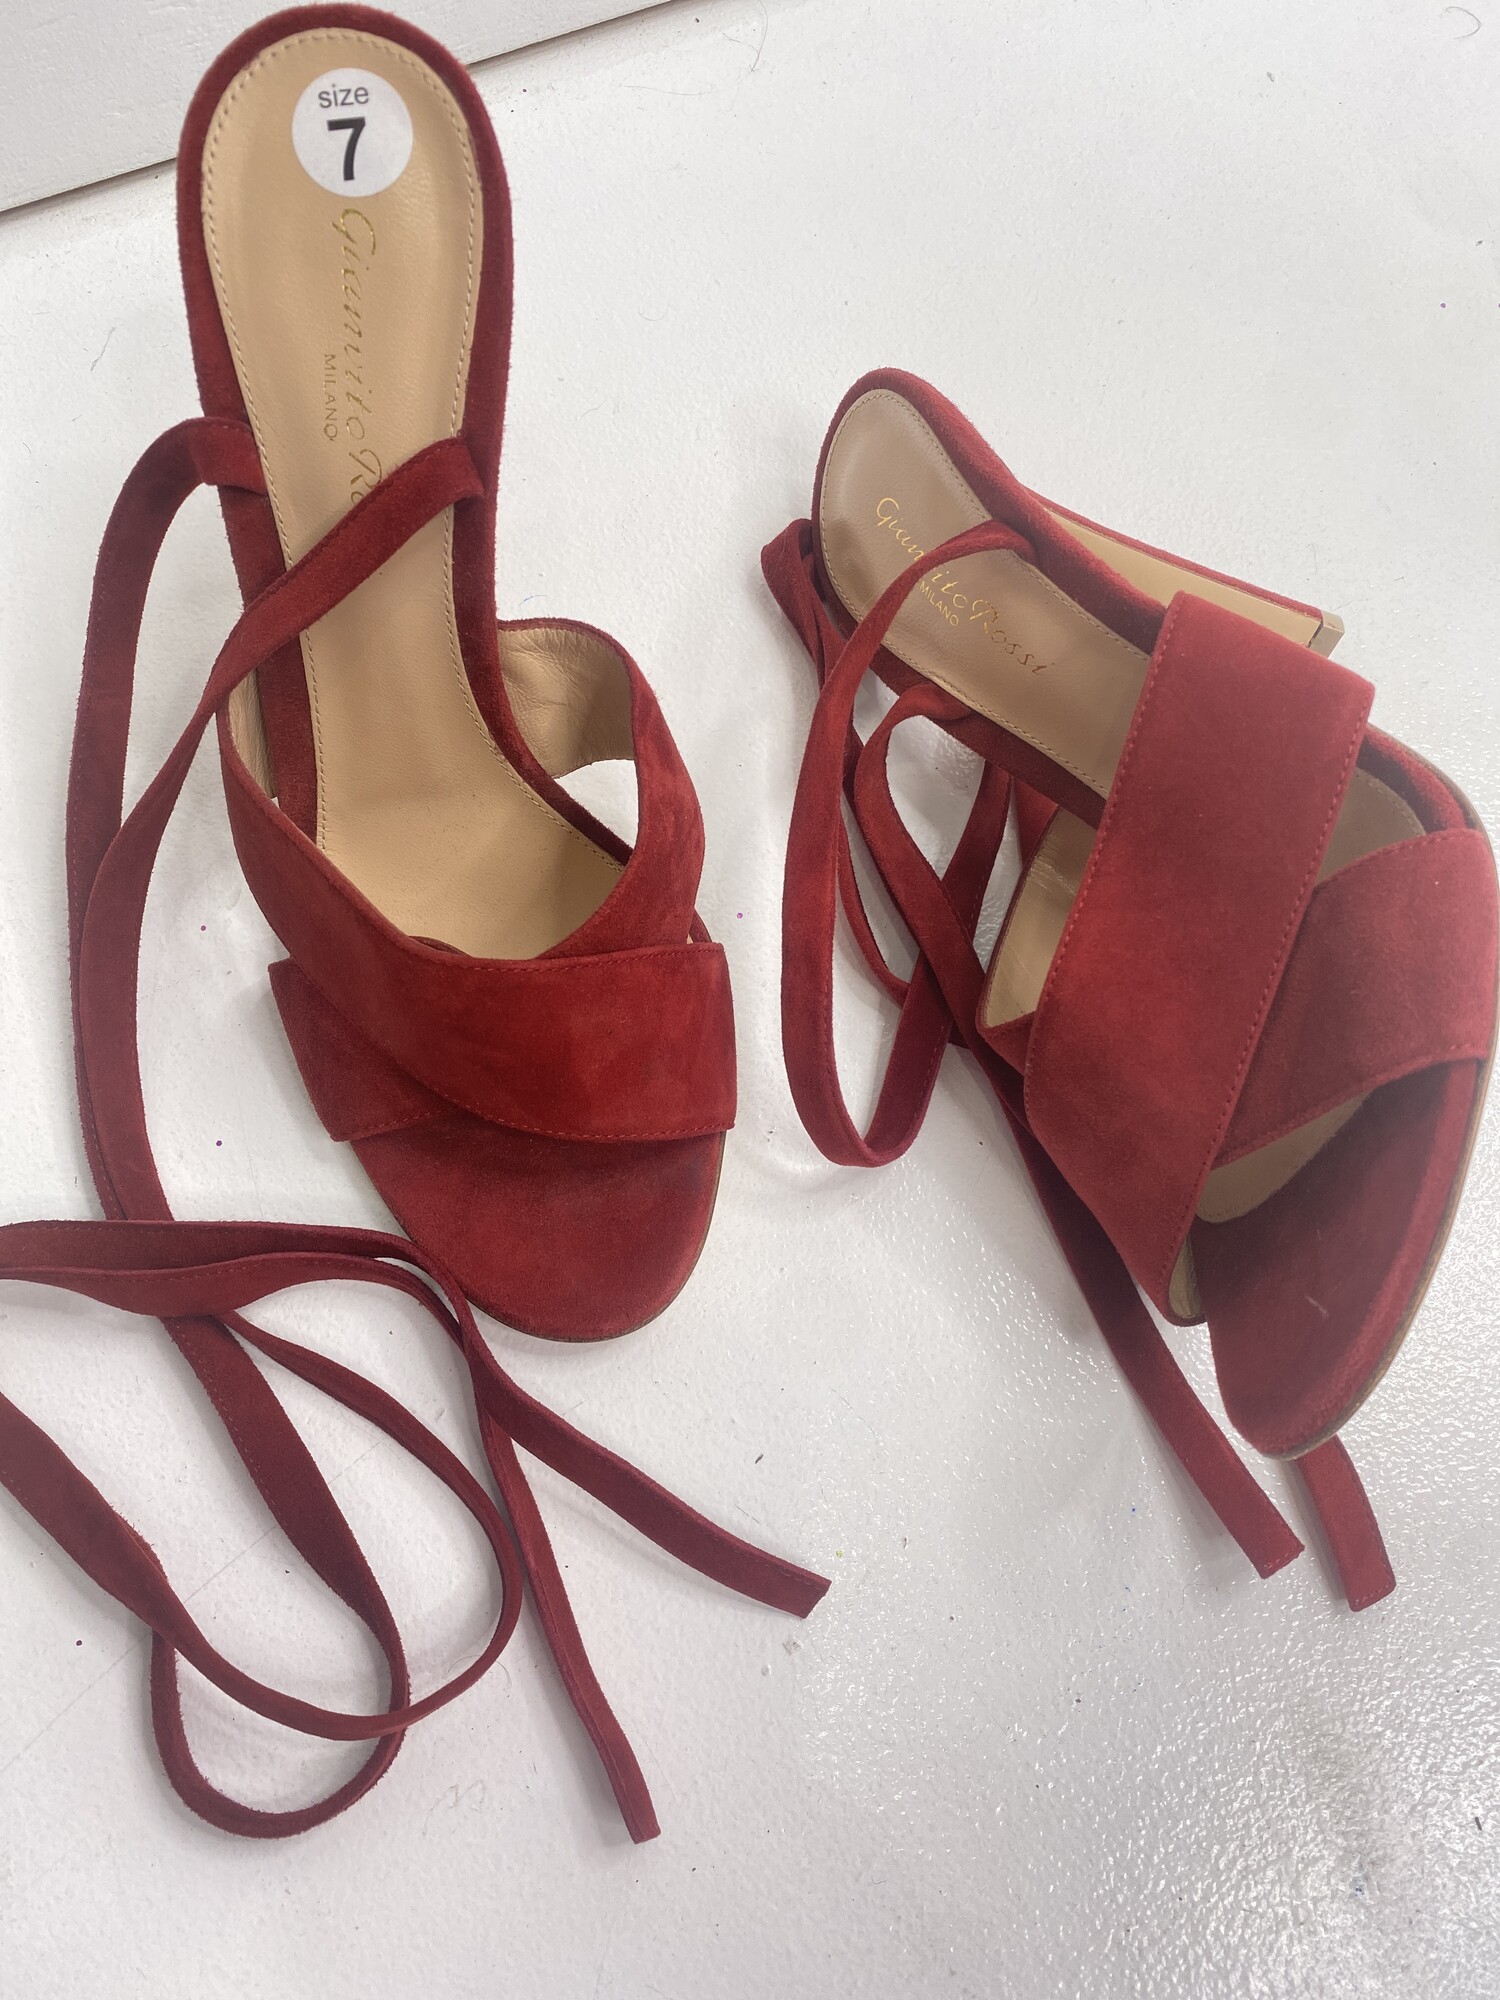 Ganvito Rossi Strap Shoes, Size: 7, Color: Red